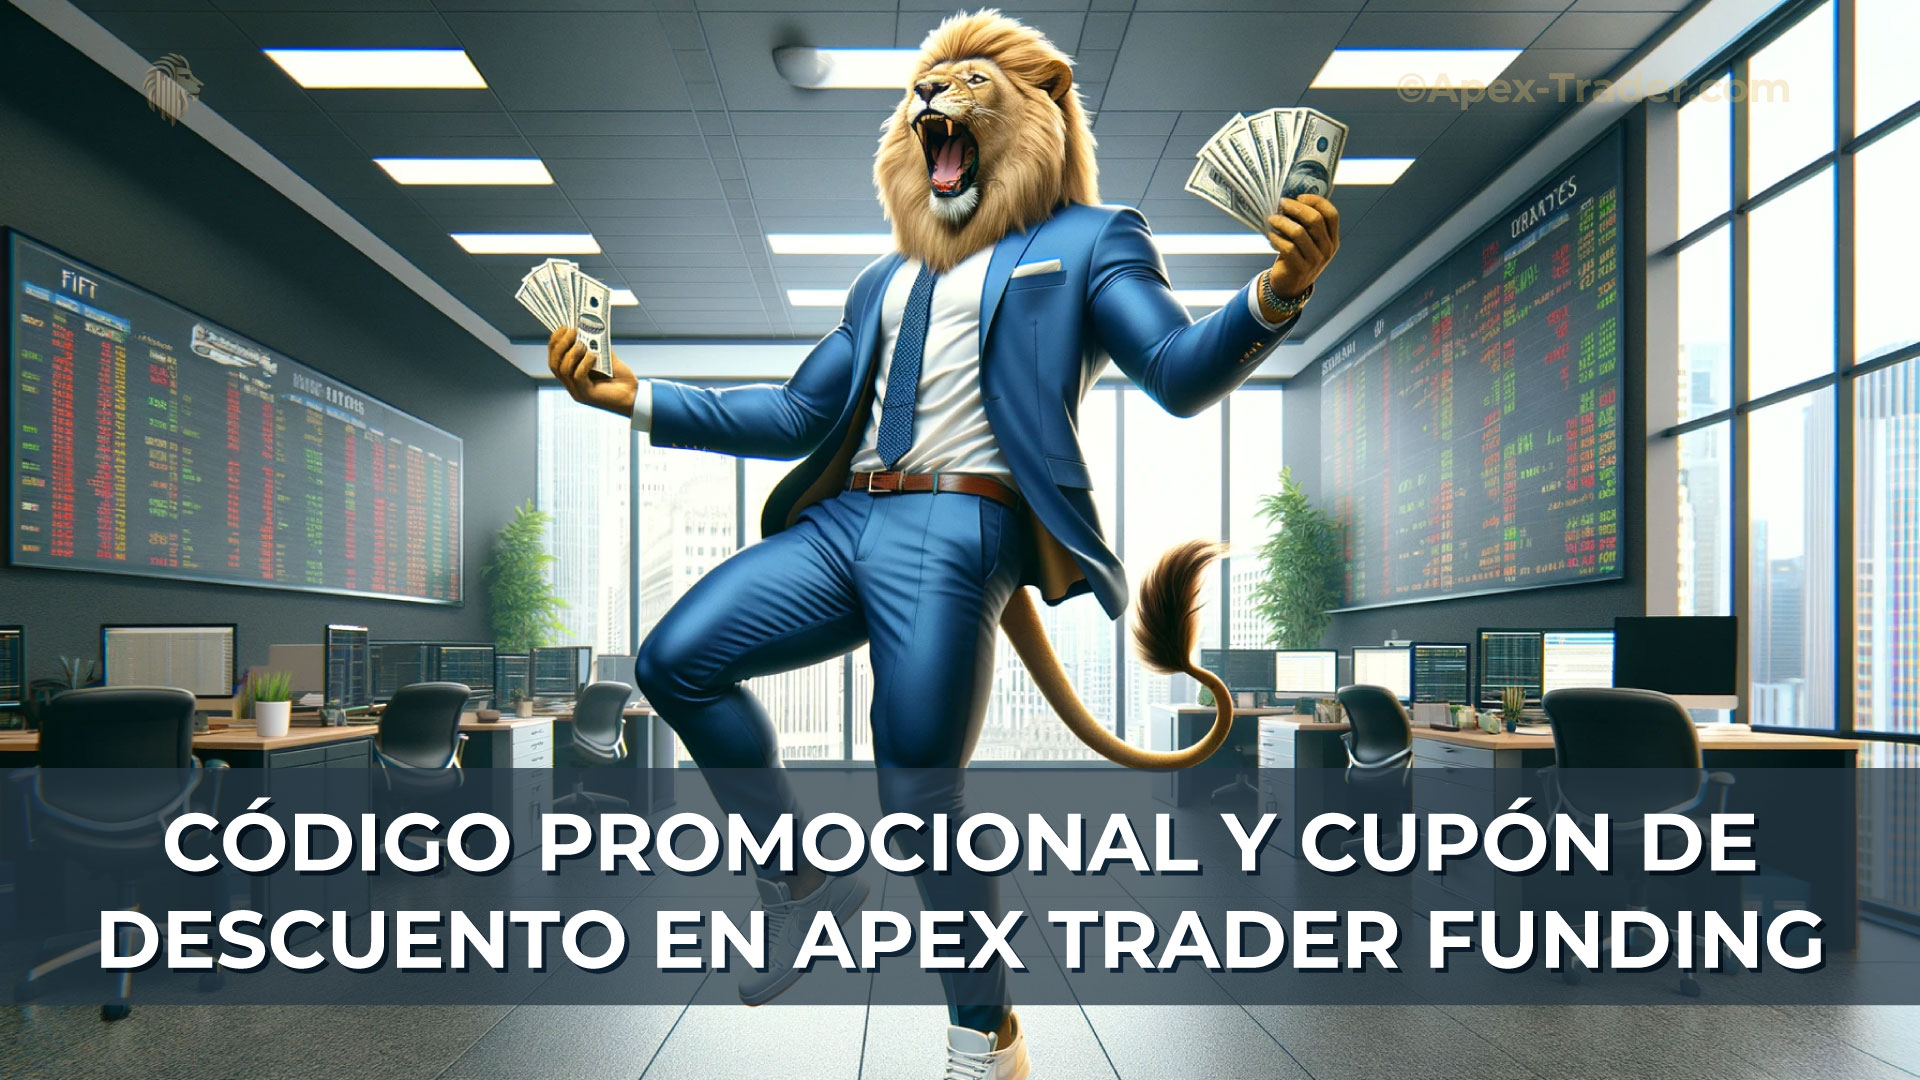 Codigo-Promocional-y-Cupón-de-Descuento-en-Apex-Trader-Funding-On-Apex-Trader-Website